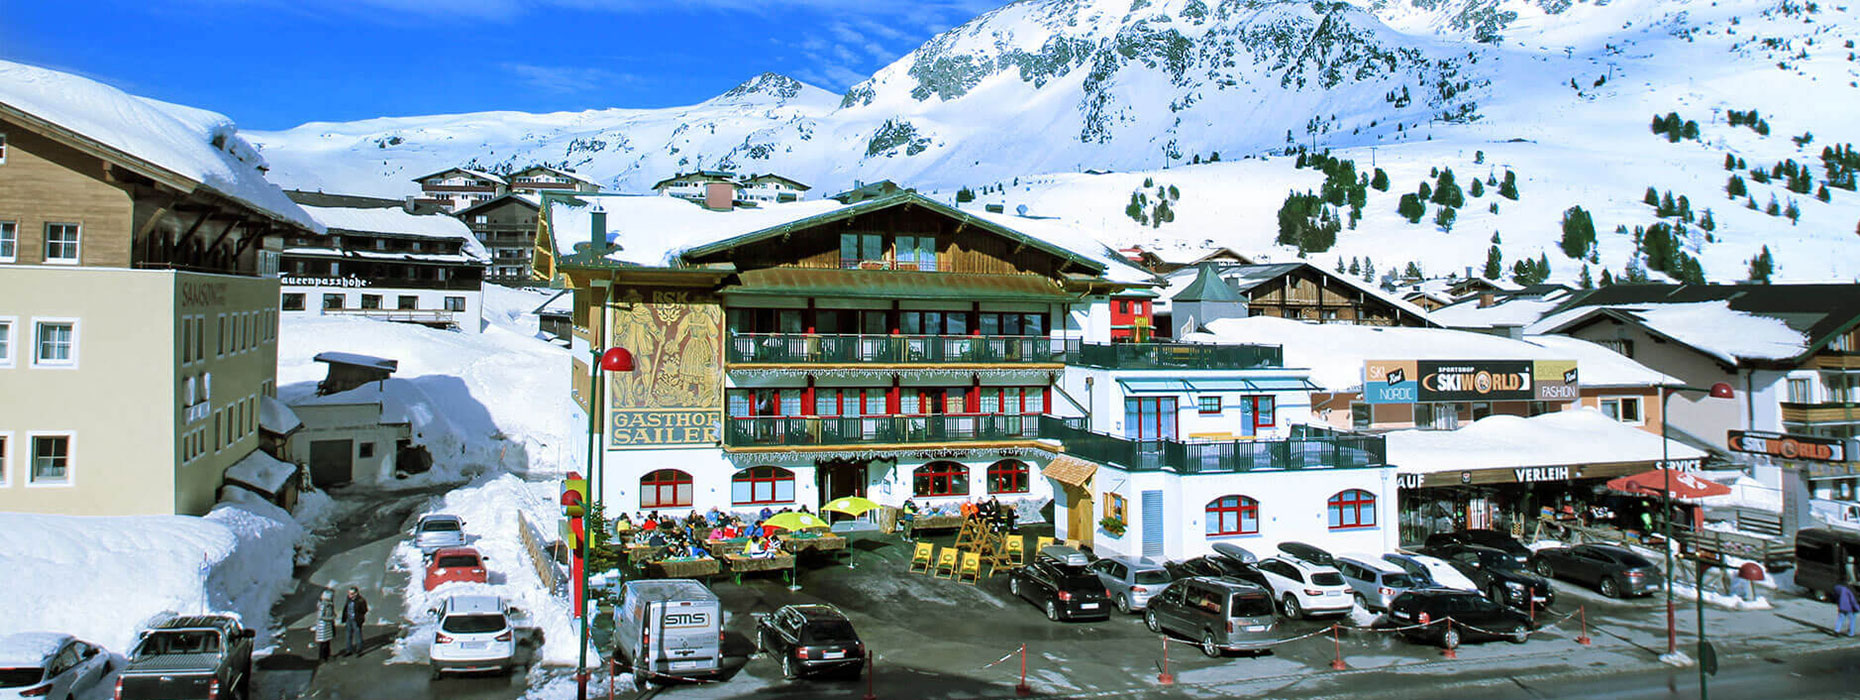 3-Sterne Hotel & Restaurant in Obertauern, 3-Sterne Hotel DER SAILER